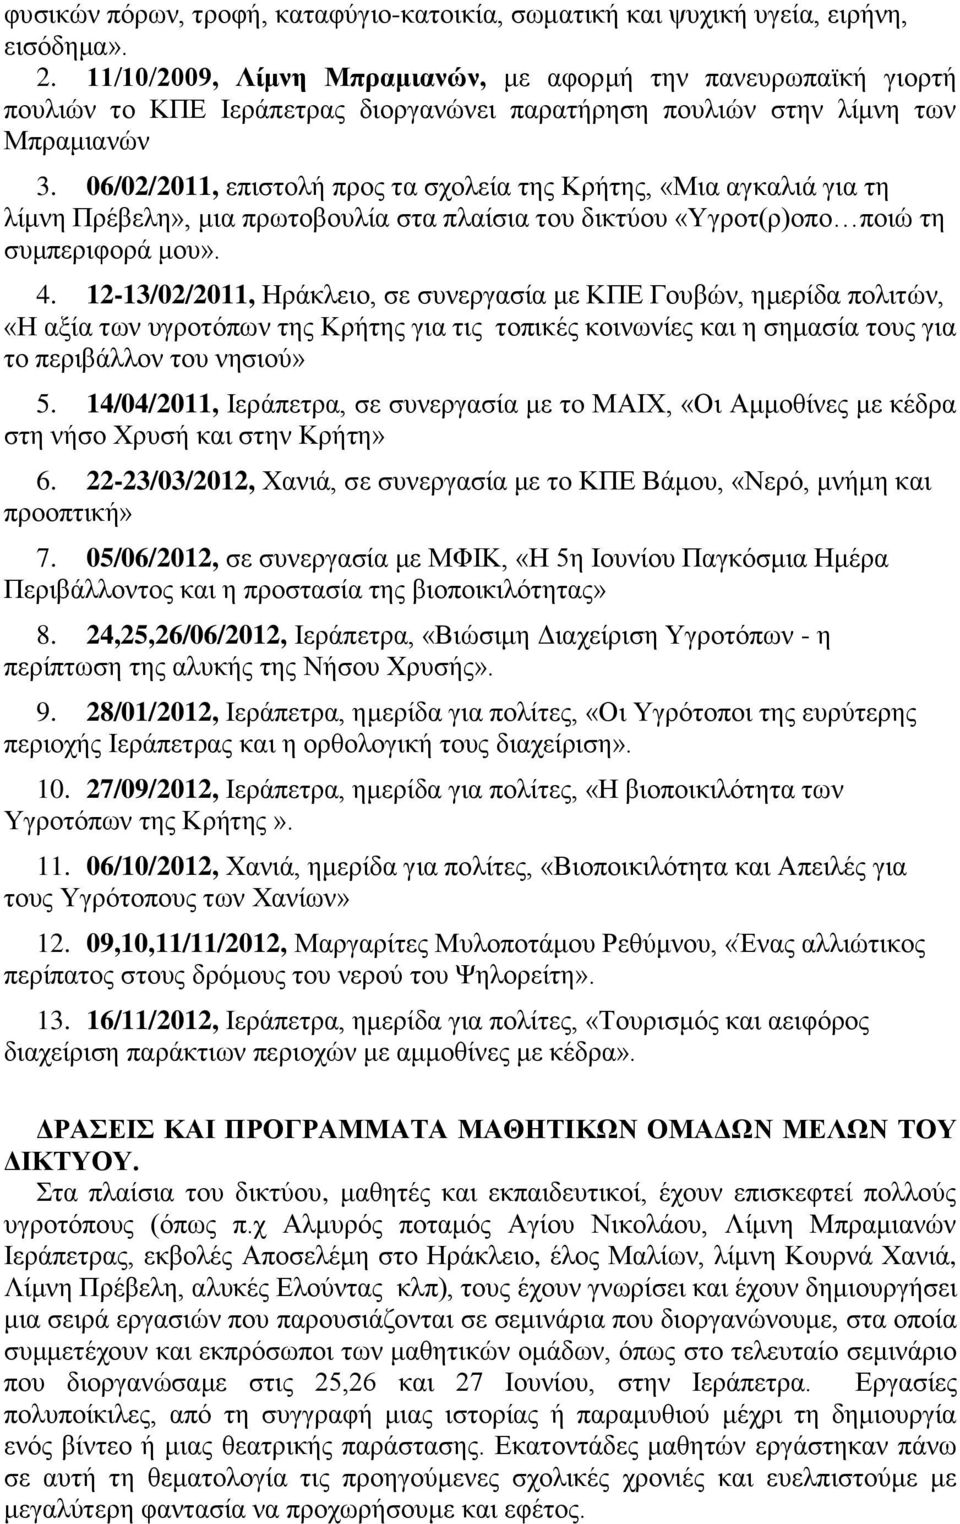 06/02/2011, επιστολή προς τα σχολεία της Κρήτης, «Μια αγκαλιά για τη λίμνη Πρέβελη», μια πρωτοβουλία στα πλαίσια του δικτύου «Υγροτ(ρ)οπο ποιώ τη συμπεριφορά μου». 4.